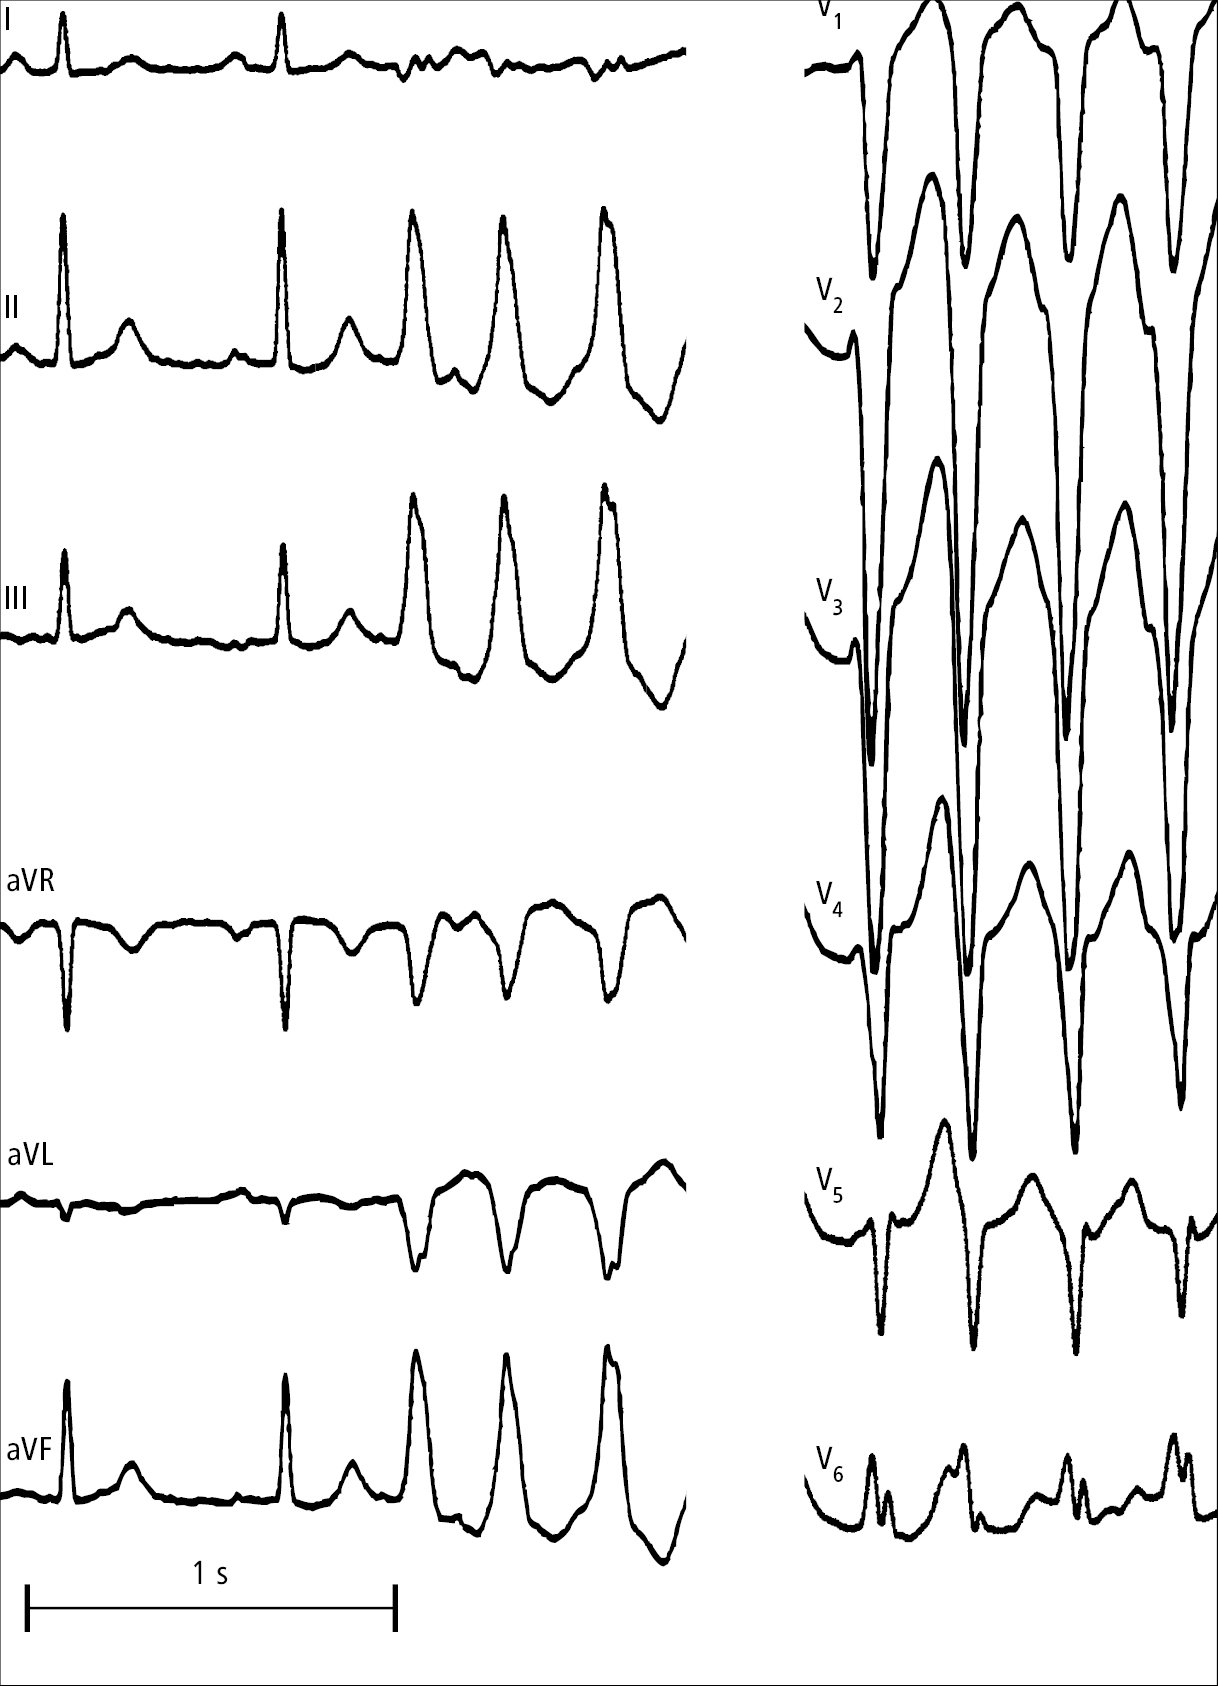    Fig. 2.6-1.  Episodio de taquicardia ventricular monomorfa del tracto de salida del ventrículo derecho 